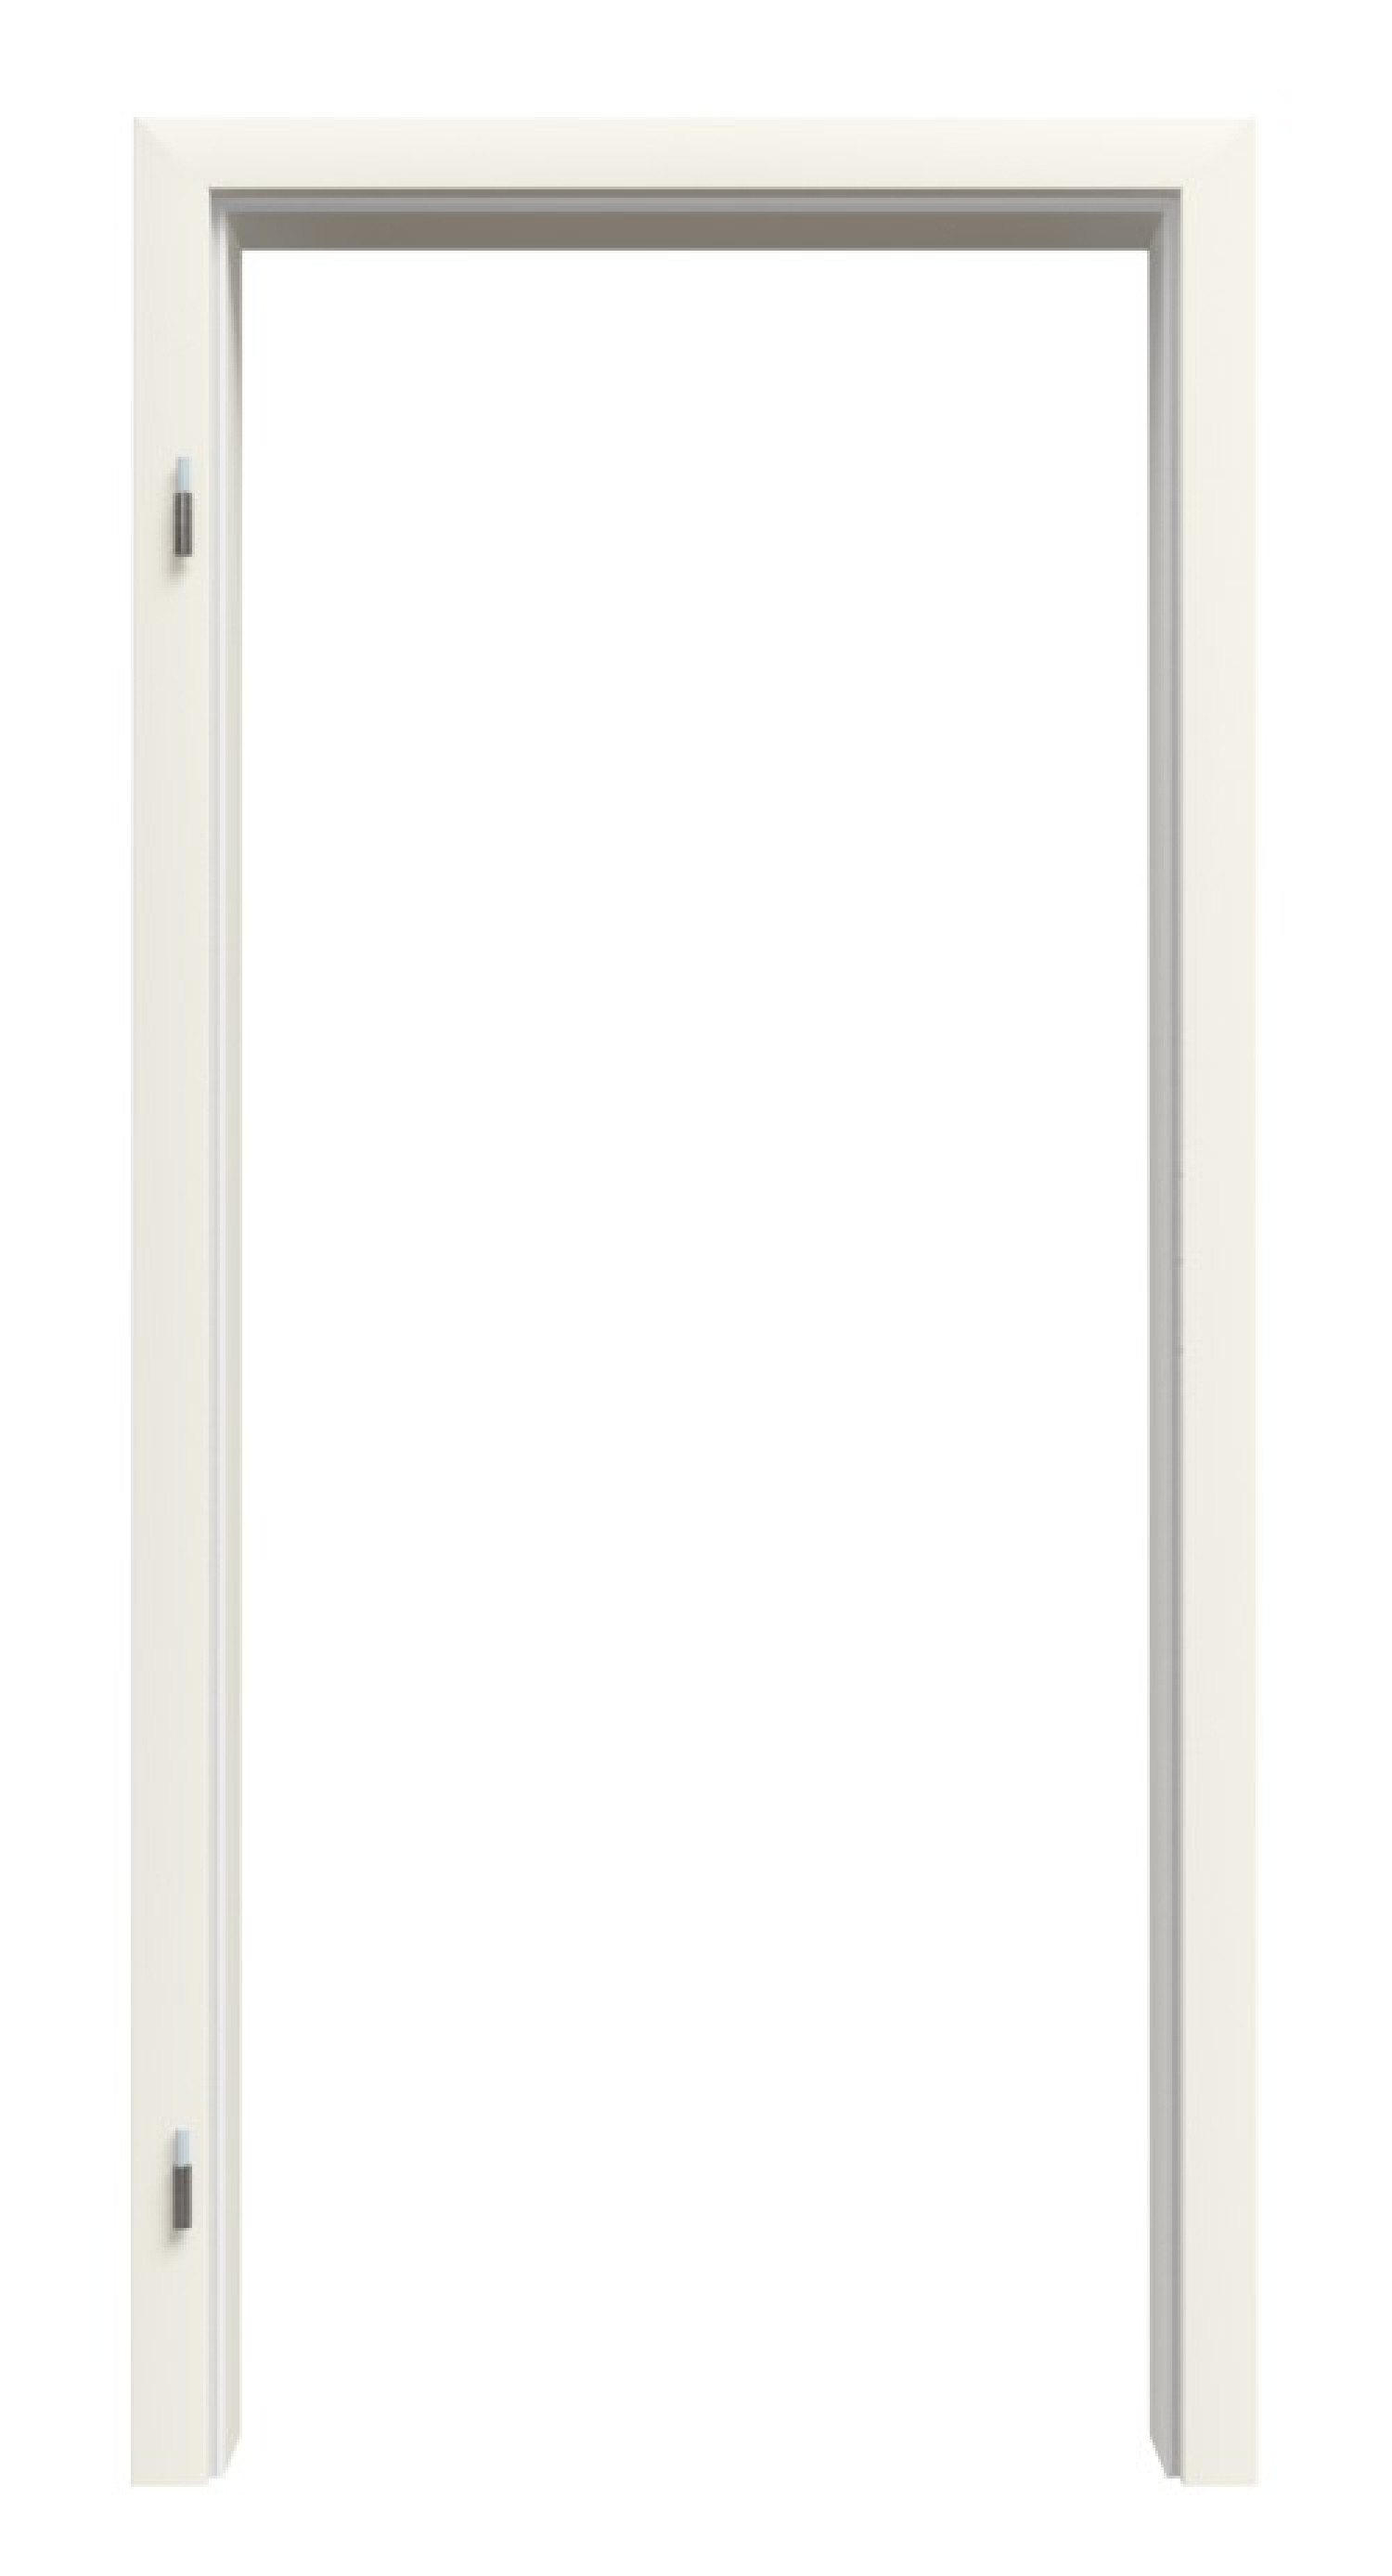 Bild von Zarge für Wohnungseingangstüren Weißlack RAL 9010 Premium ZA-14 mit eckiger Kante